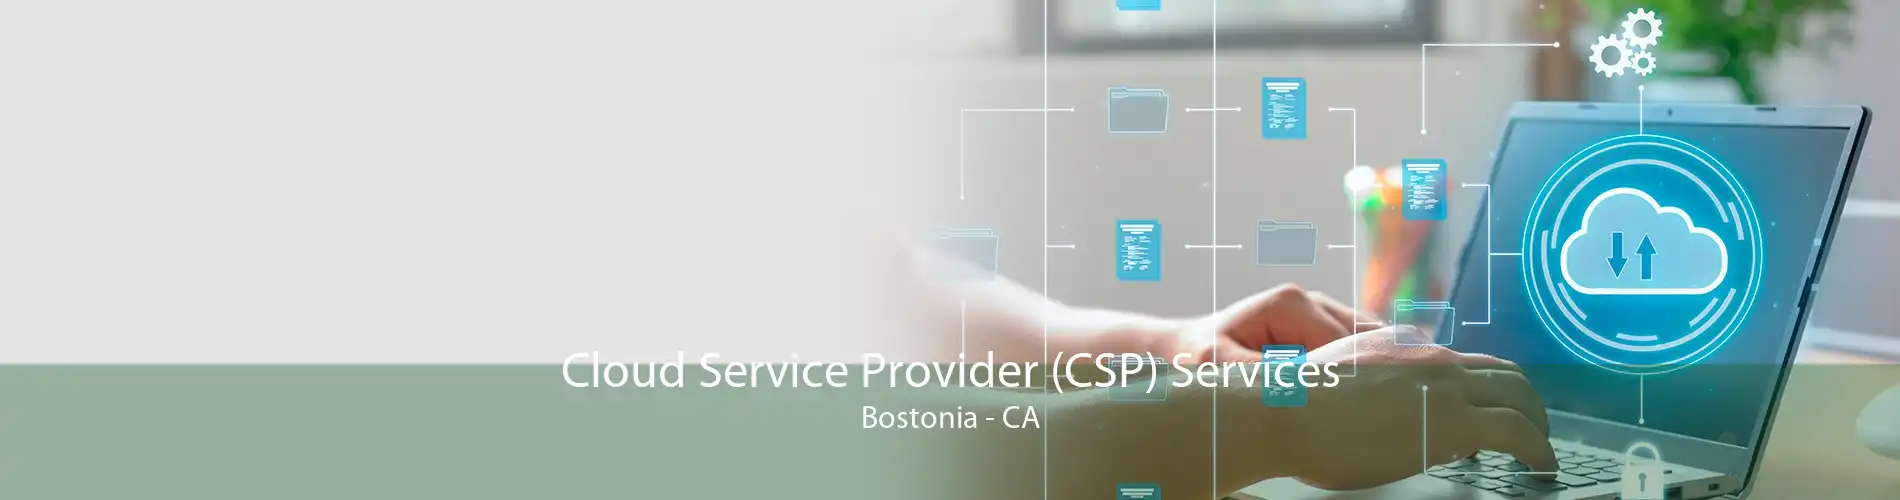 Cloud Service Provider (CSP) Services Bostonia - CA